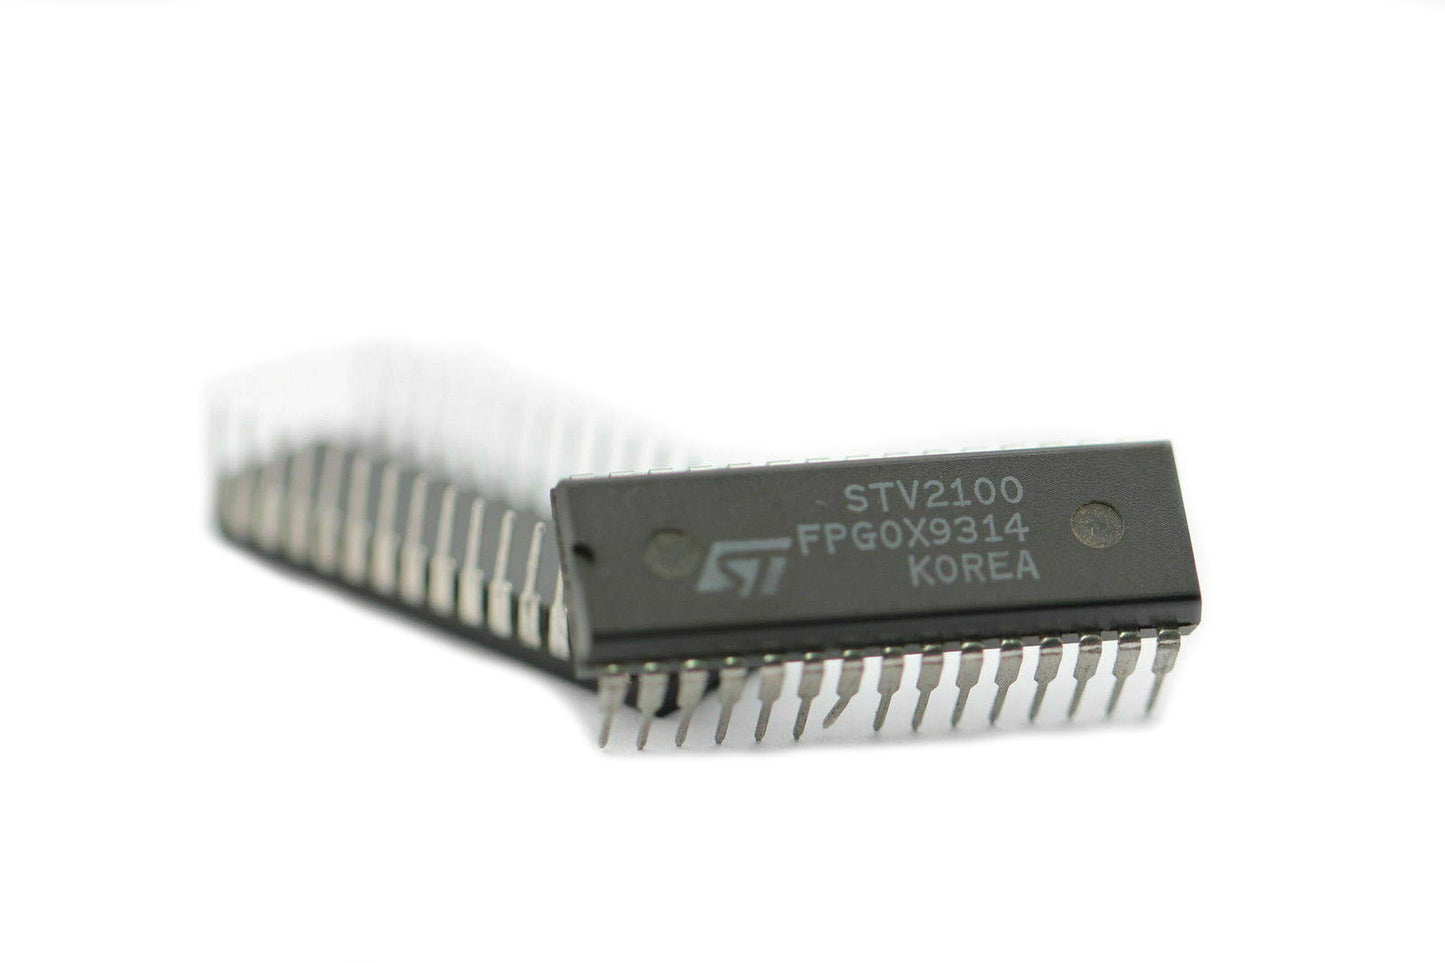 ST STV2100 Componente elettronico, circuito integrato, transistor, 30 contatti